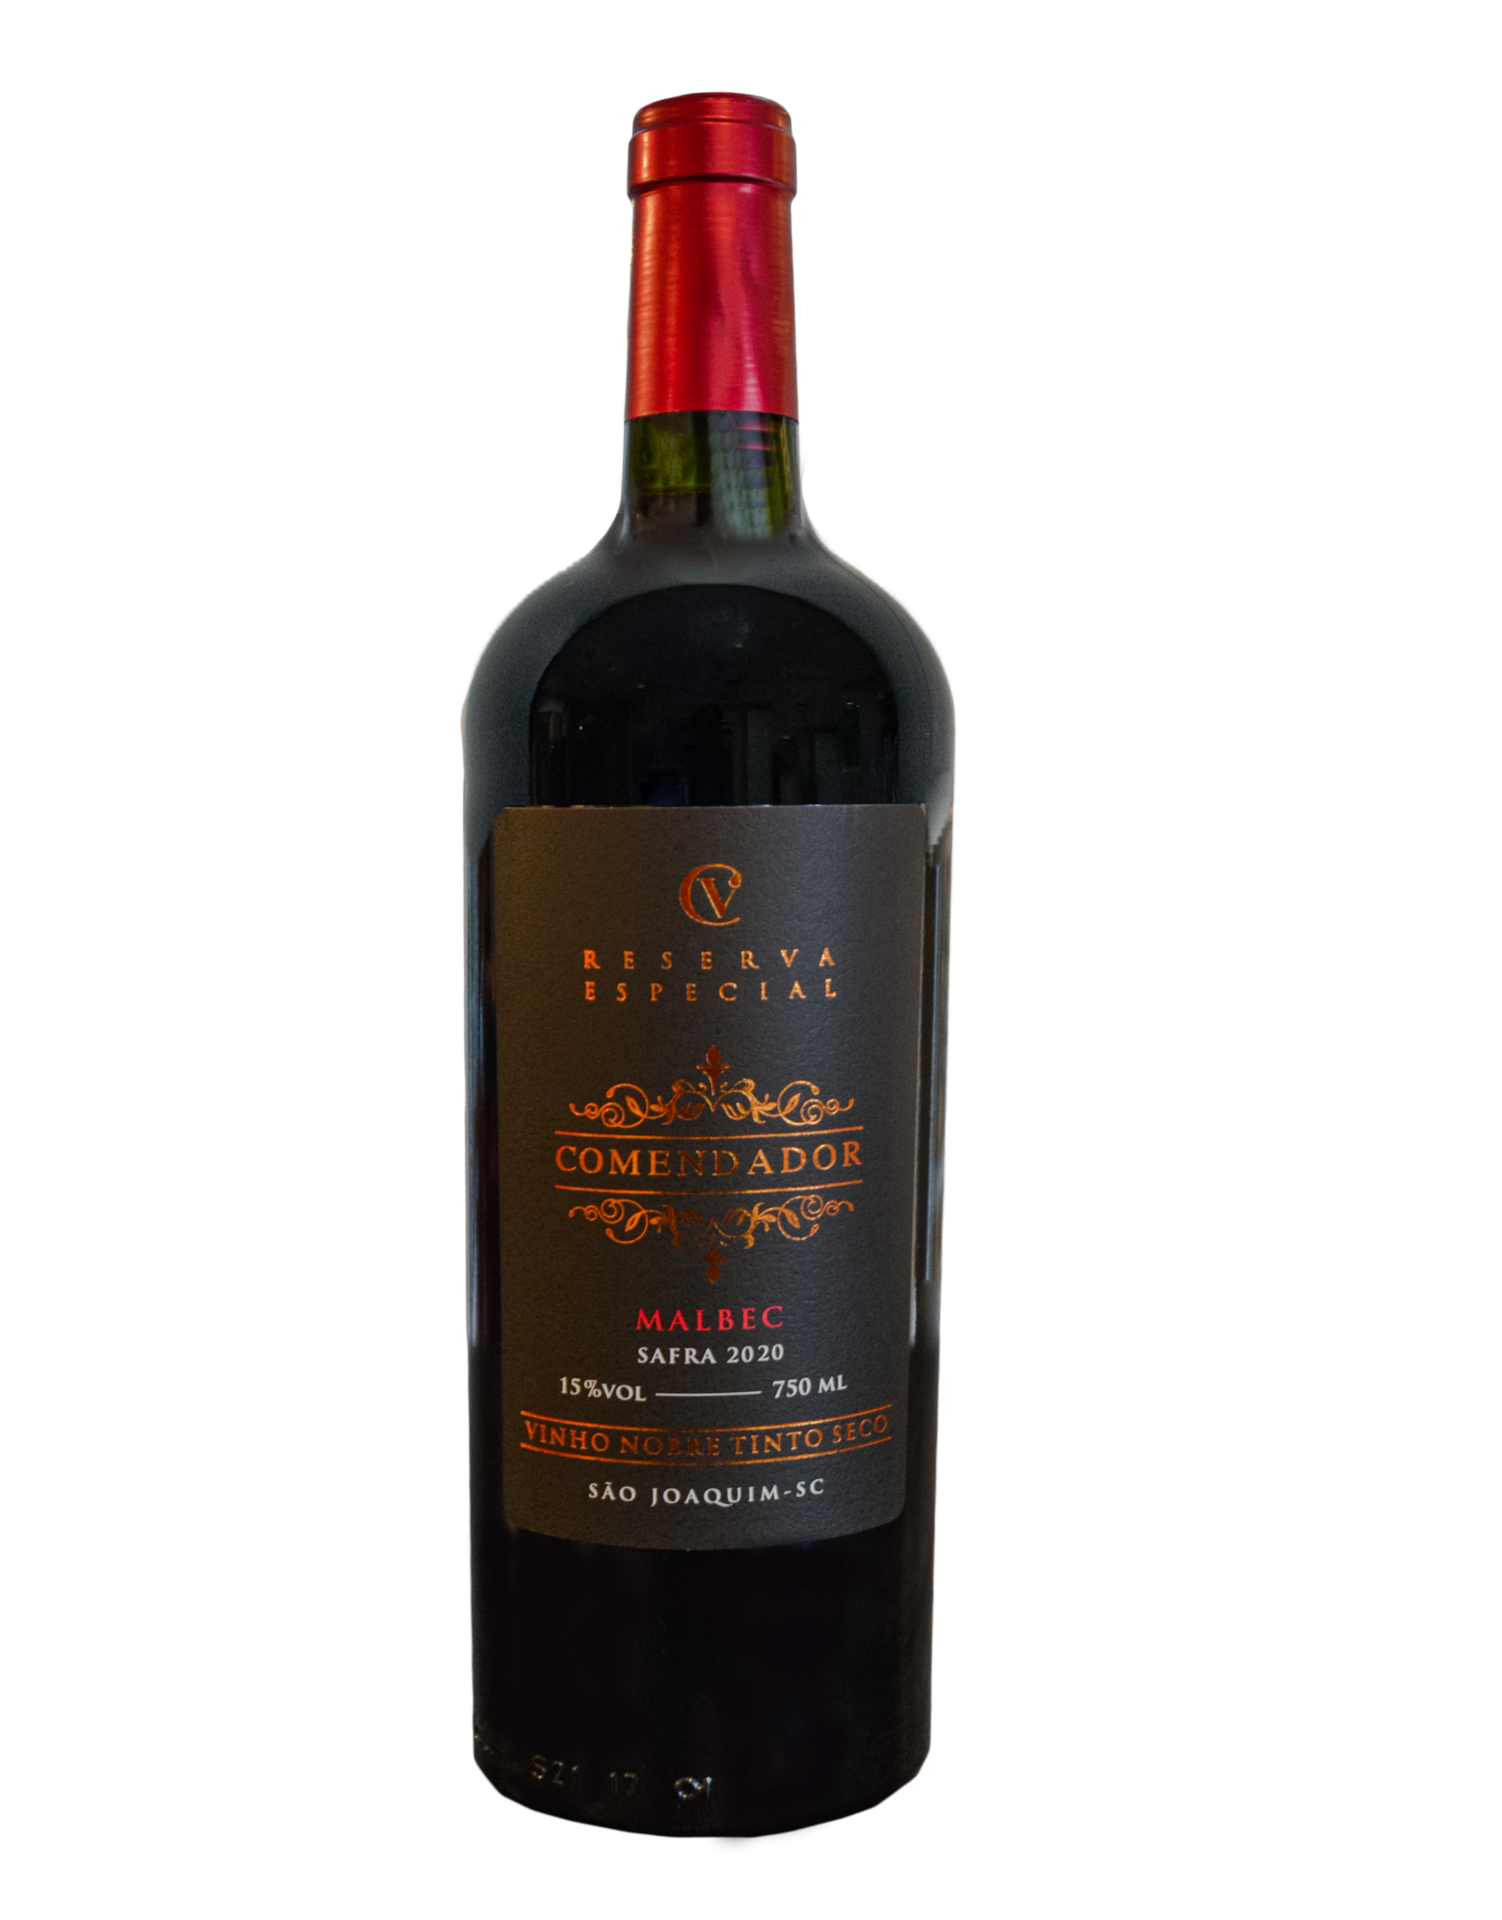 Vinho Comendador - Tinto Seco - Malbec - 750 ml